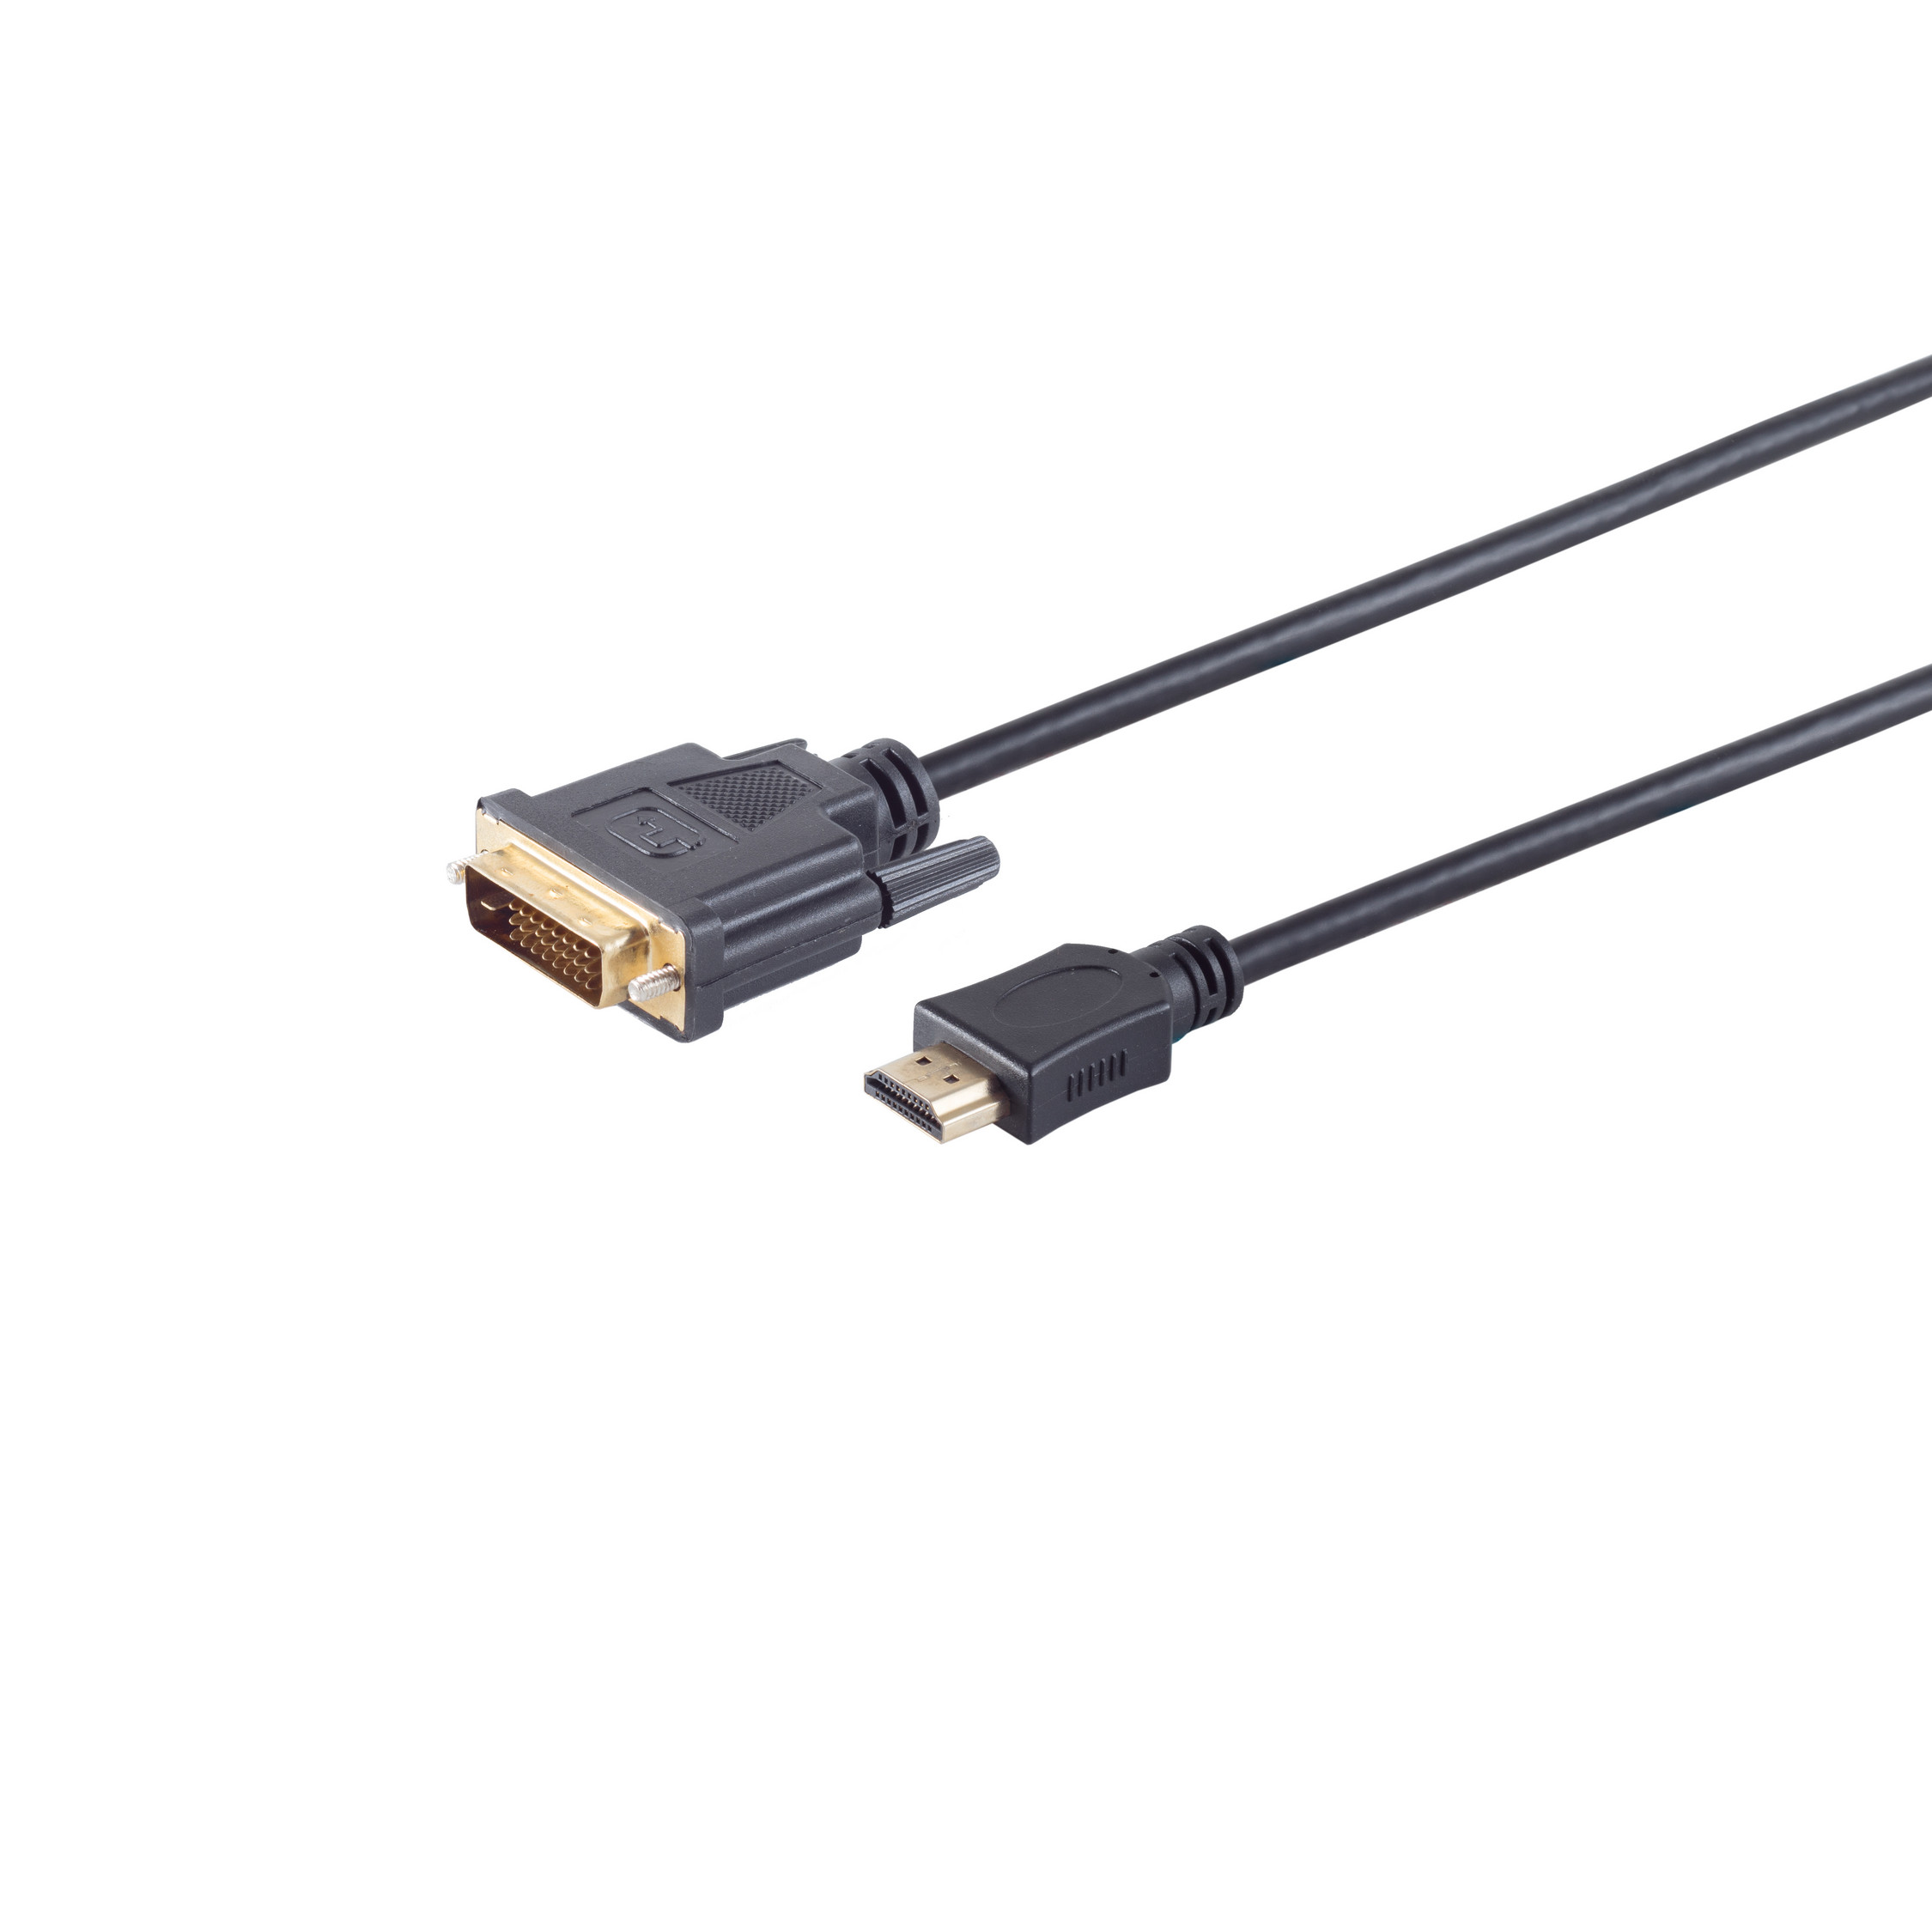 S/CONN MAXIMUM CONNECTIVITY HDMI Stecker Stecker verg. / HDMI (24+1) Kabel DVI-D 5m